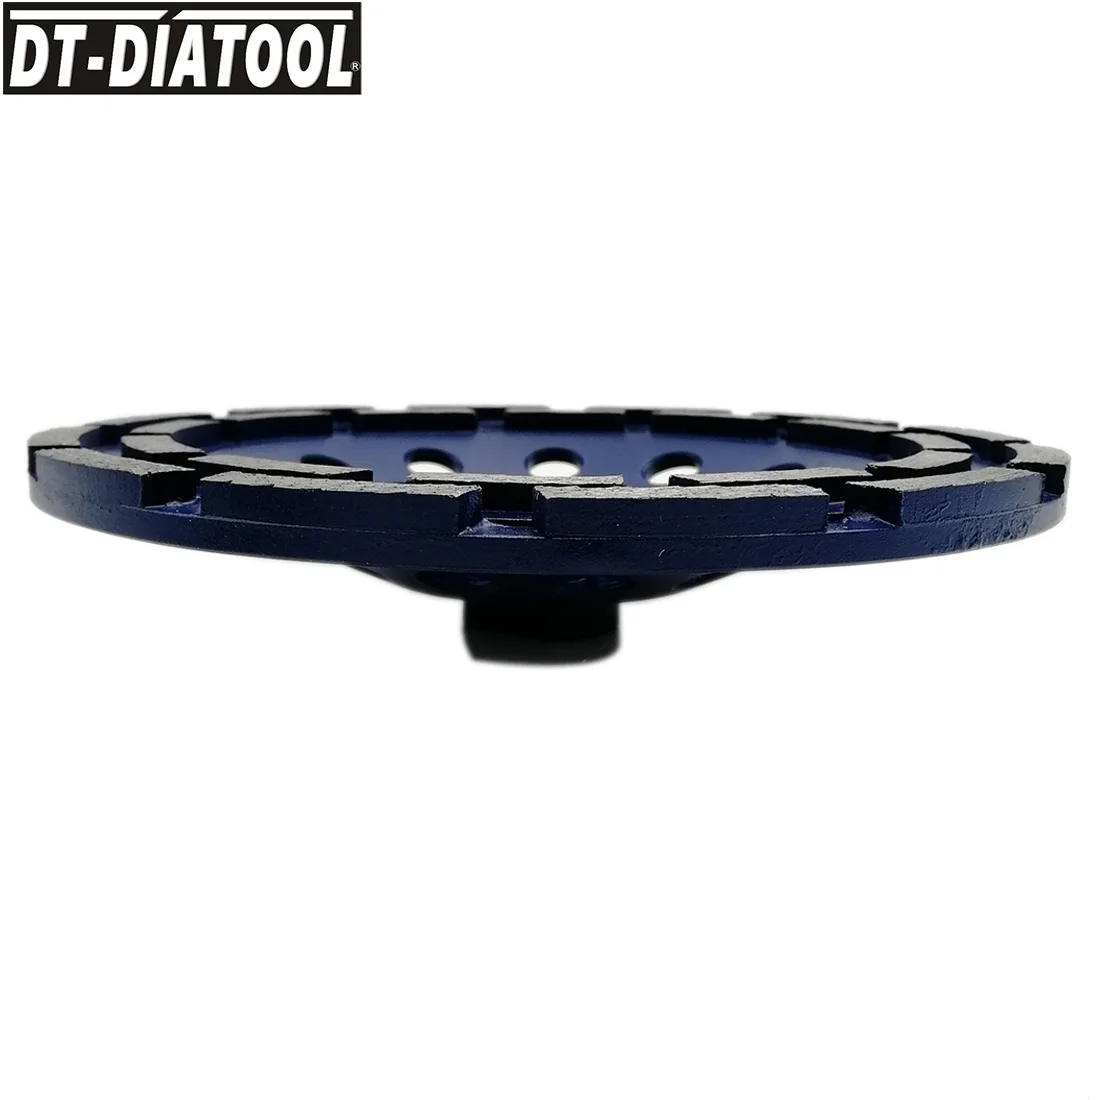 DT-DIATOOL 1 шт. 5/8-11 диаметр резьбы 180 мм/7 дюймов двухрядный алмазный шлифовальный круг для бетона кирпича твердого камня гранита мрамора